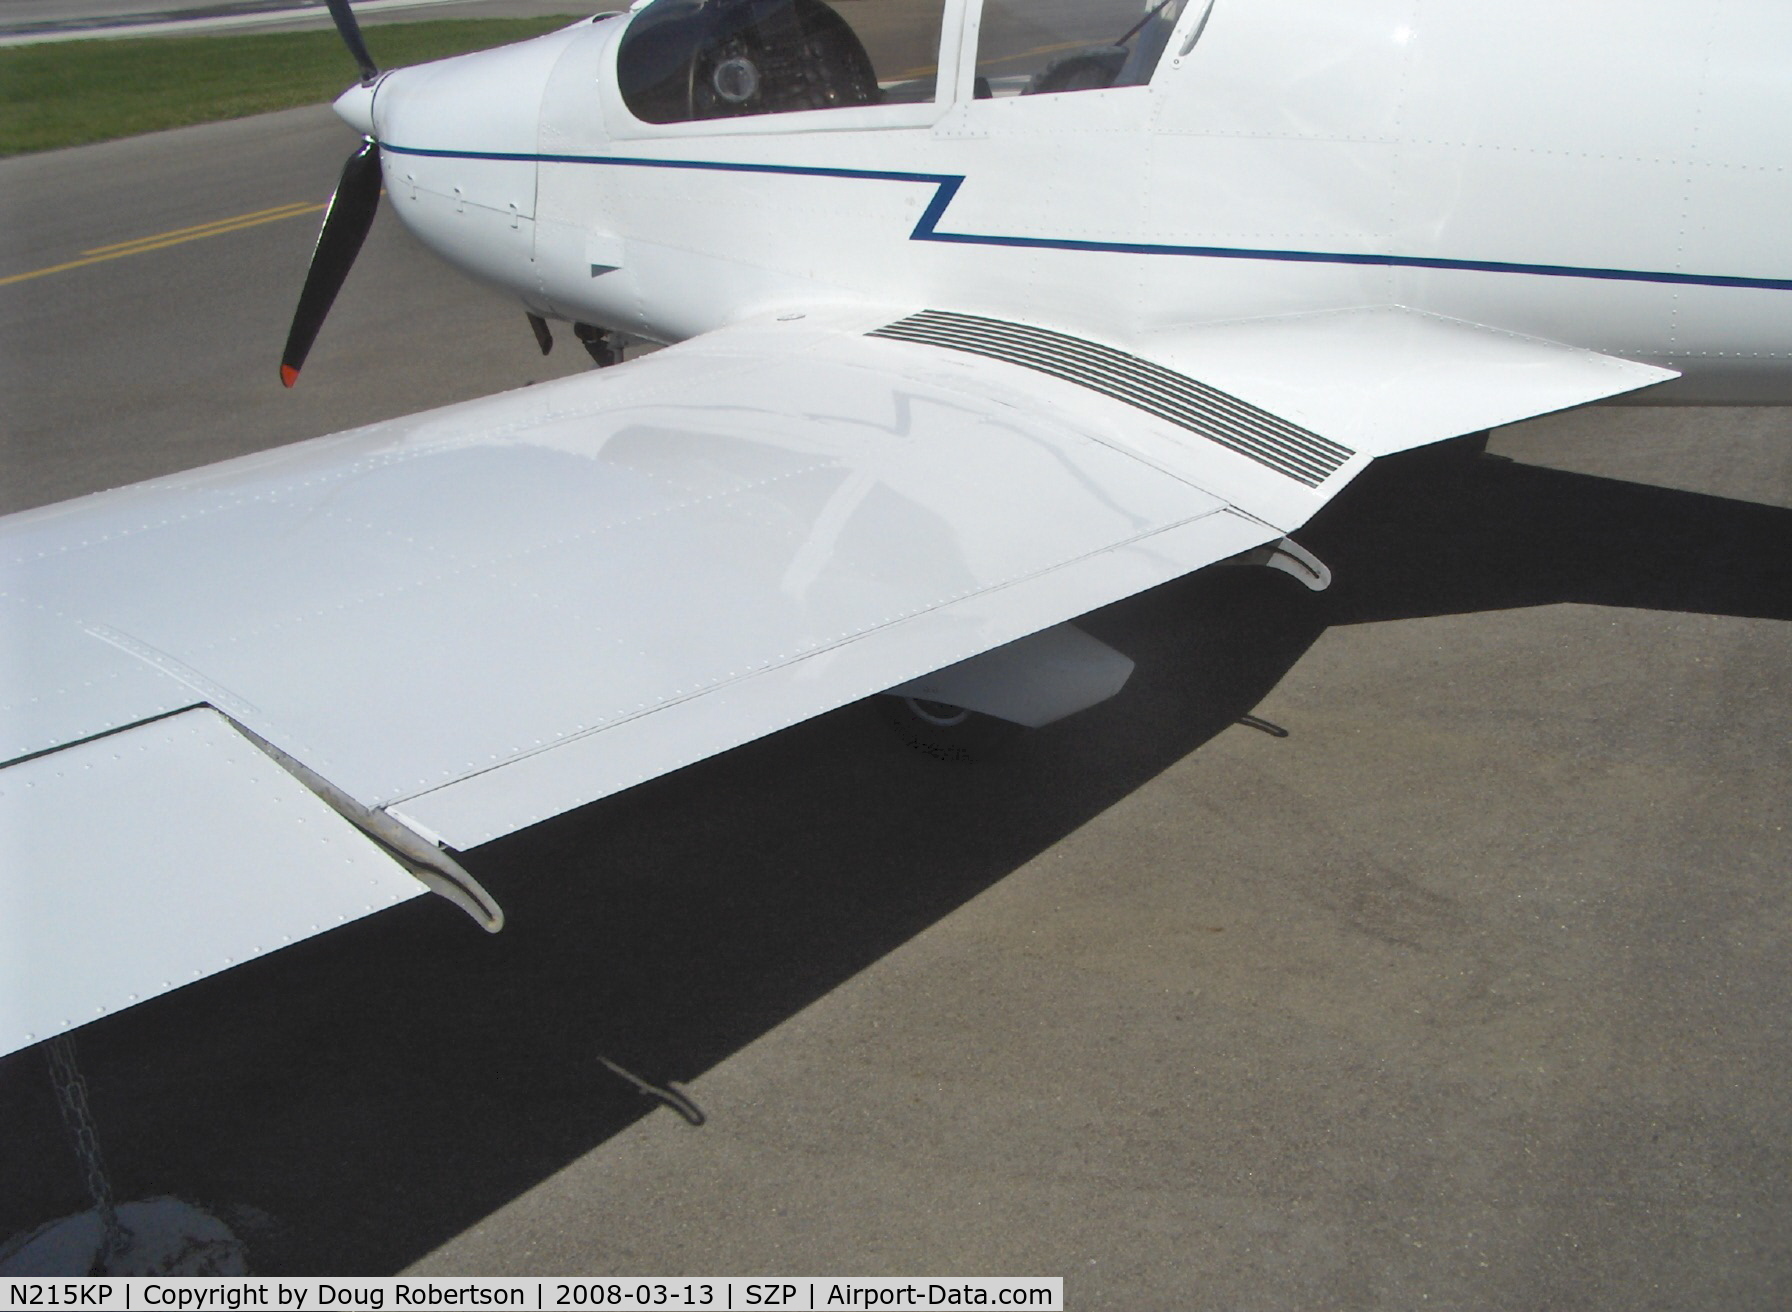 N215KP, 2005 Jihlavan KP-5 C/N 5111129K, 2005 Jihlavan Airplanes Sro KAPPA KP-5, Rotax 912S 100 Hp, Fowler flaps increase wing area when extended